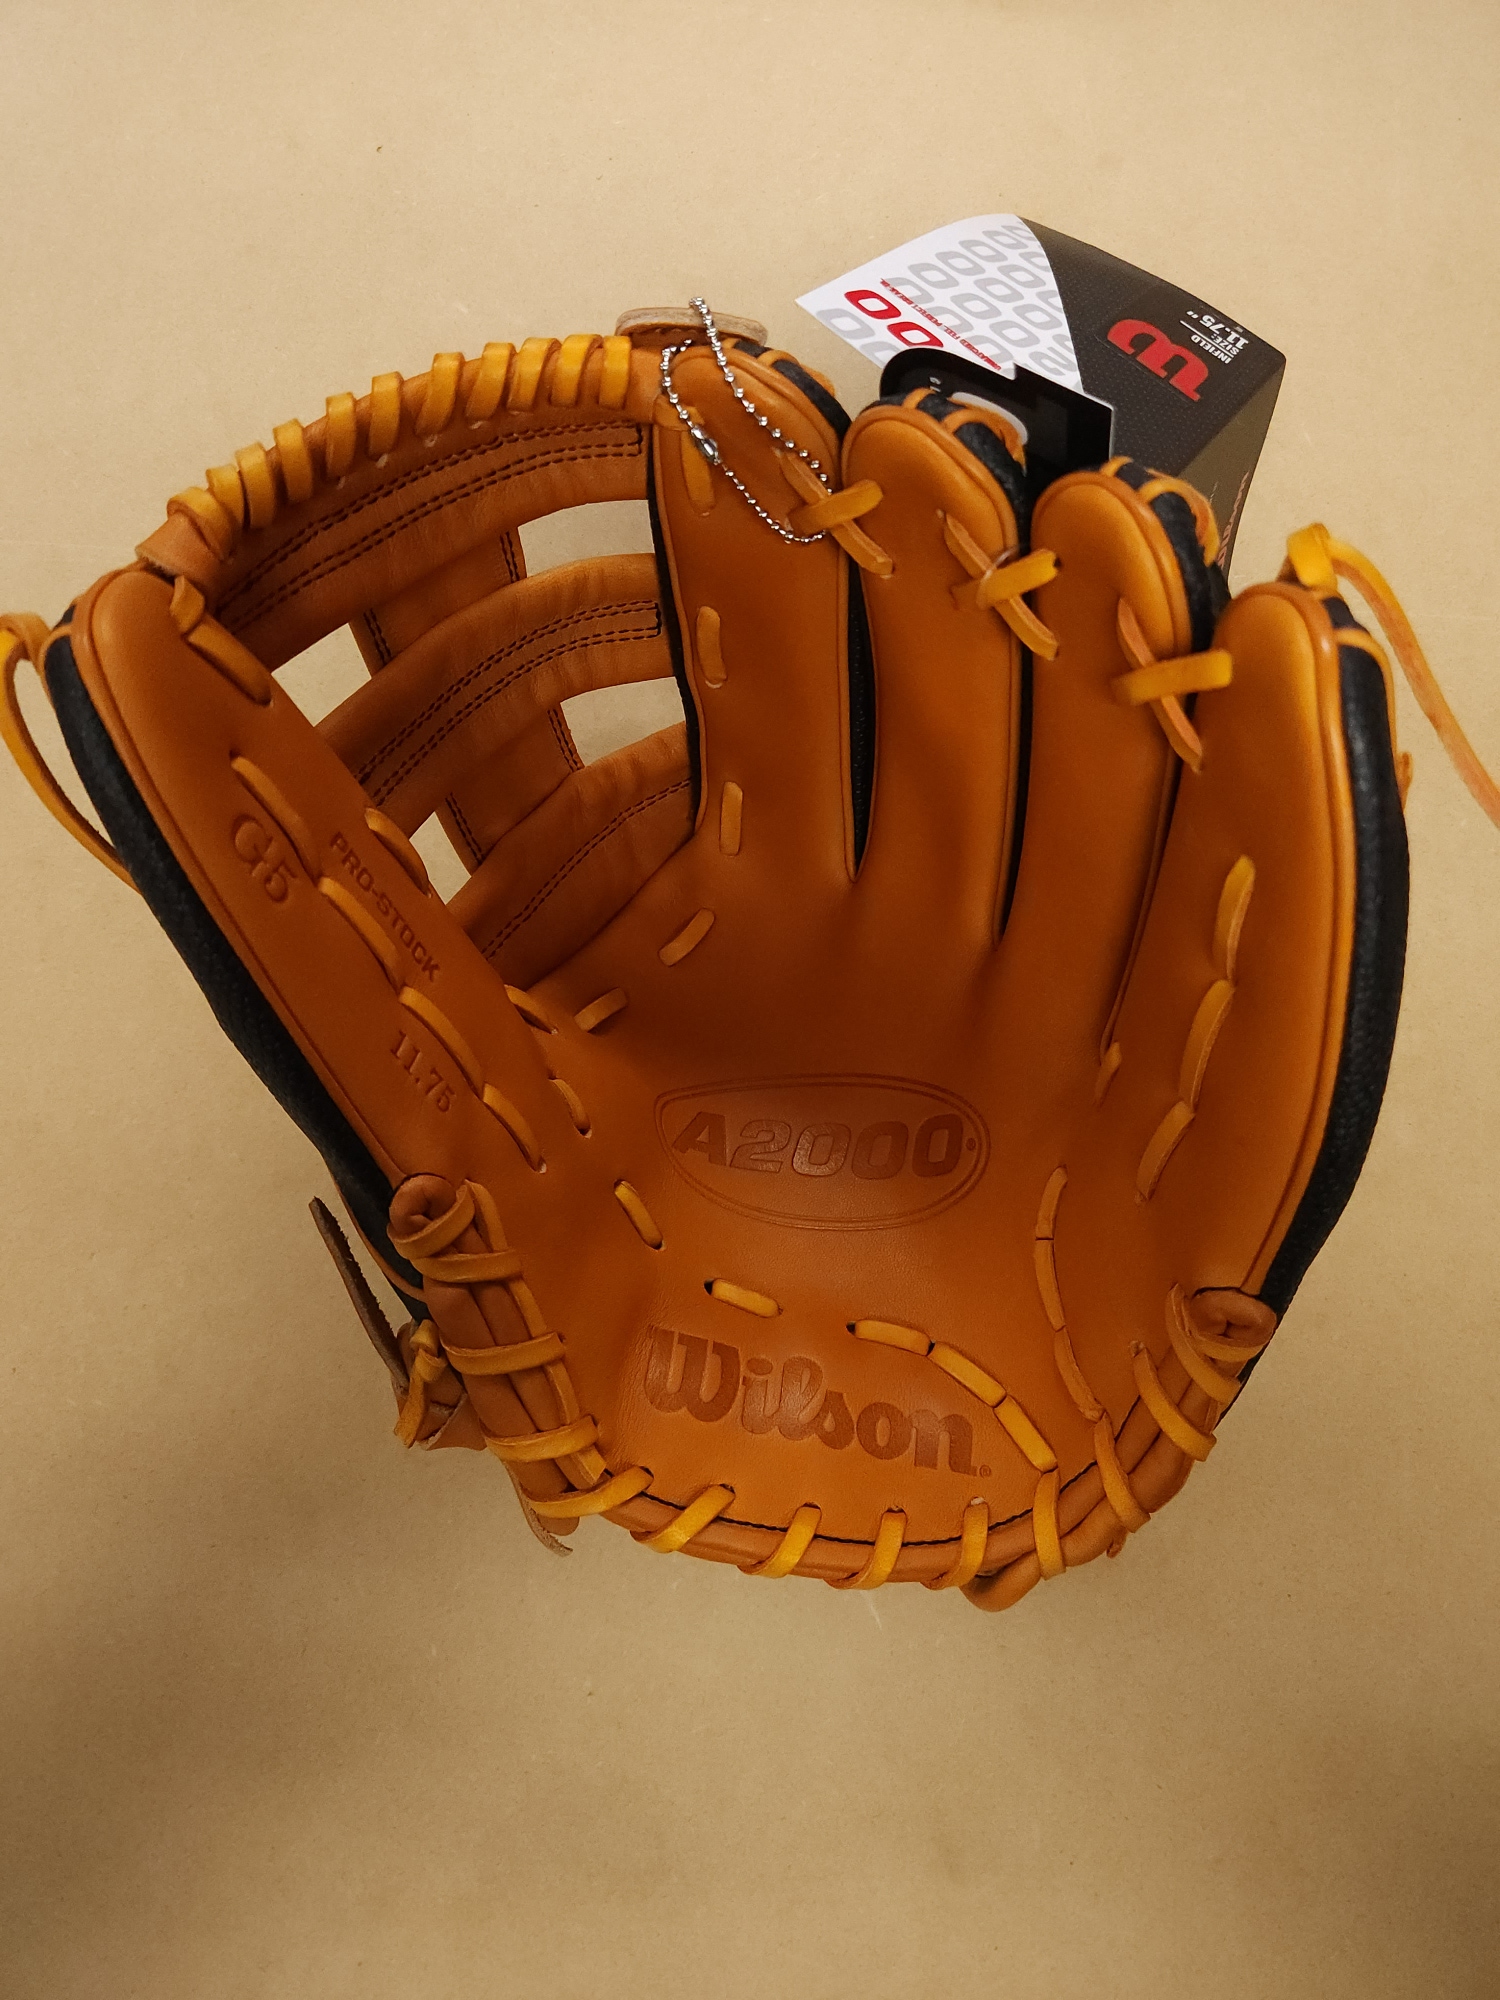 New Wilson October 2021 GOTM Right Hand Throw Infield A2000 Baseball Glove 11.75"